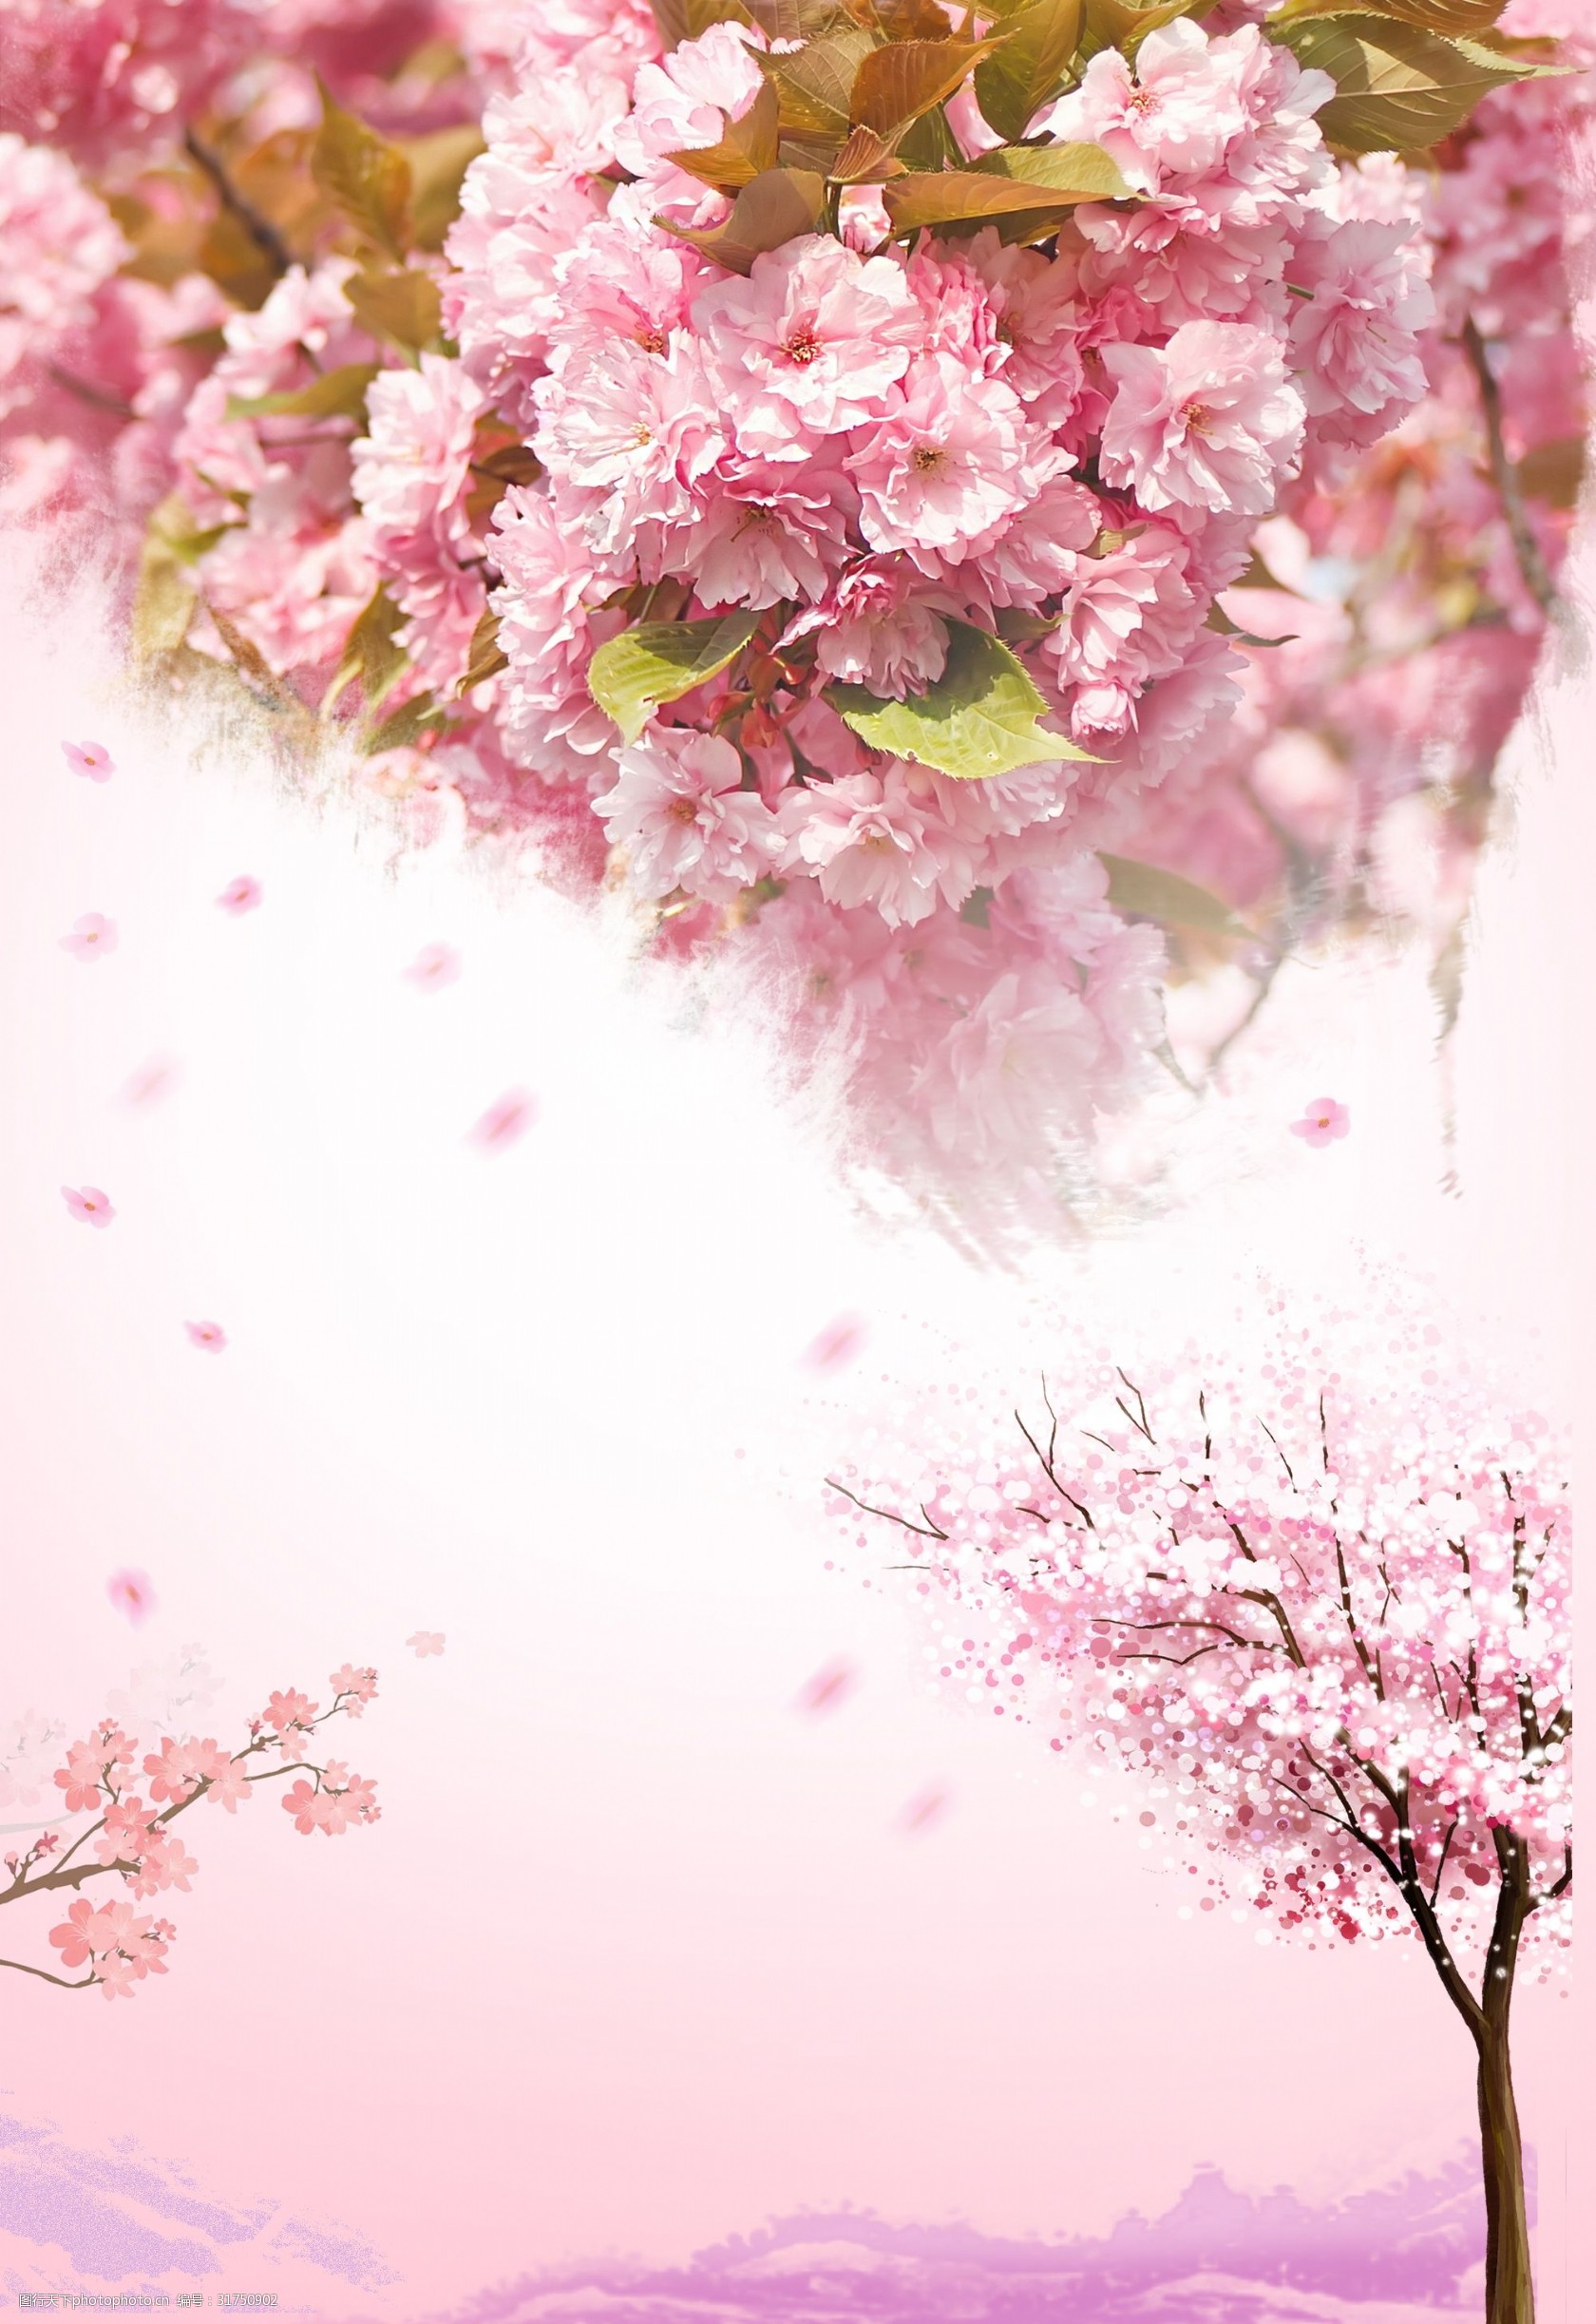 关键词:粉色浪漫樱花背景 浪漫 樱花 花瓣 卡通 渐变 粉色 樱花节